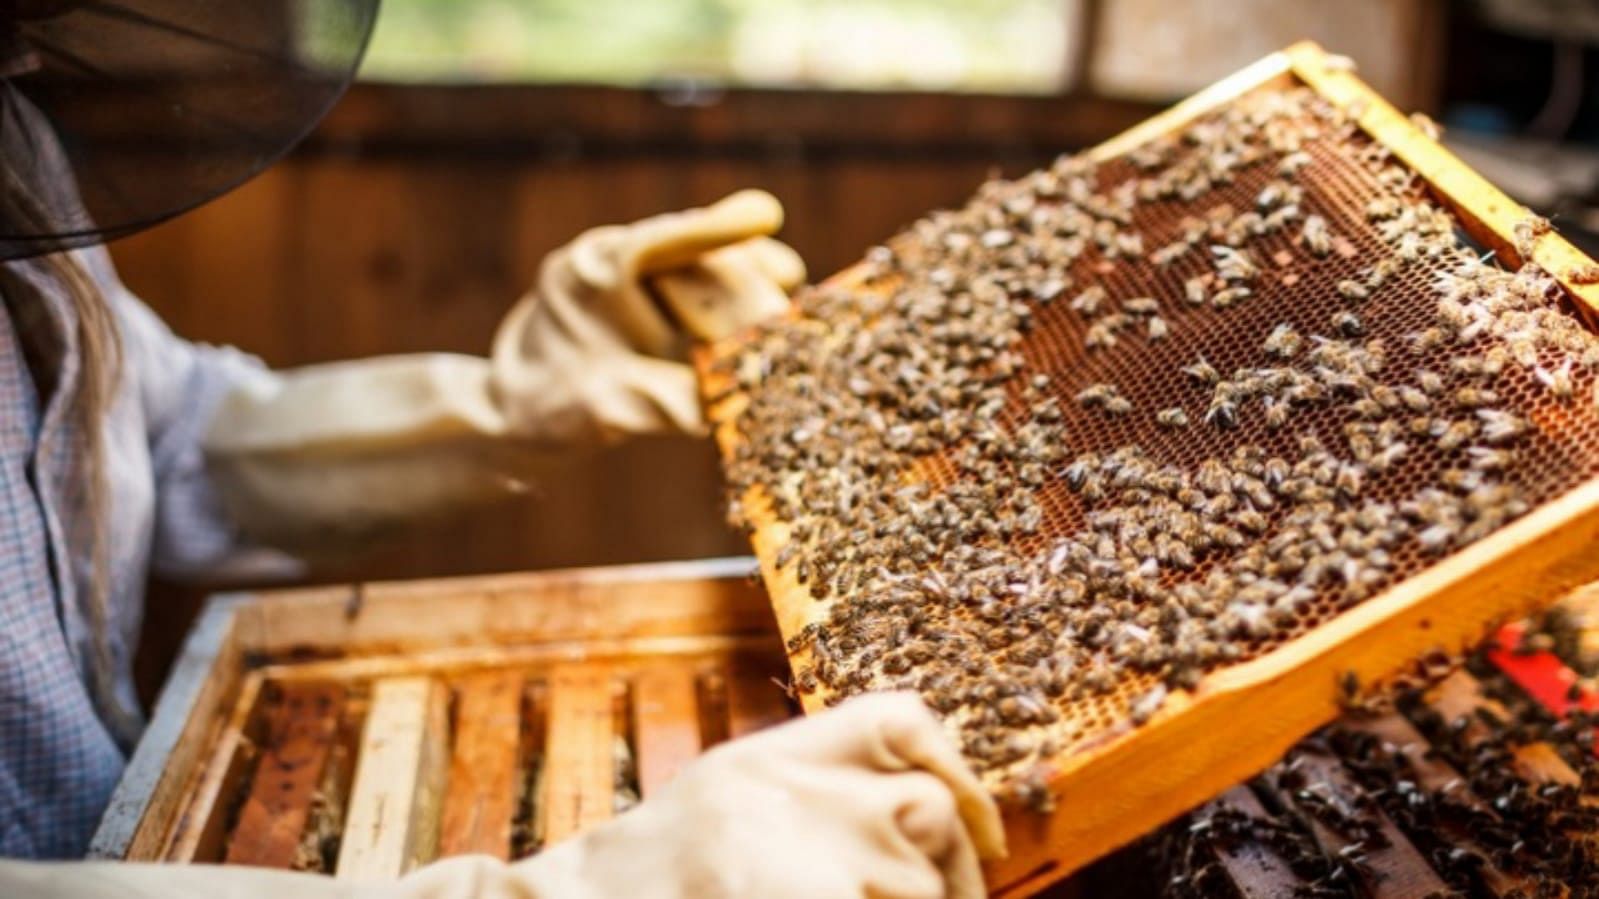 Business Ideas Beekeeping Honey Farming Madhumakhi Palan Earn Rs 5 Lakh Monthly - Business Ideas: कम लागत में शुरू करें ये खास बिजनेस, हर महीने होगी लाखों में कमाई, सरकार का भी